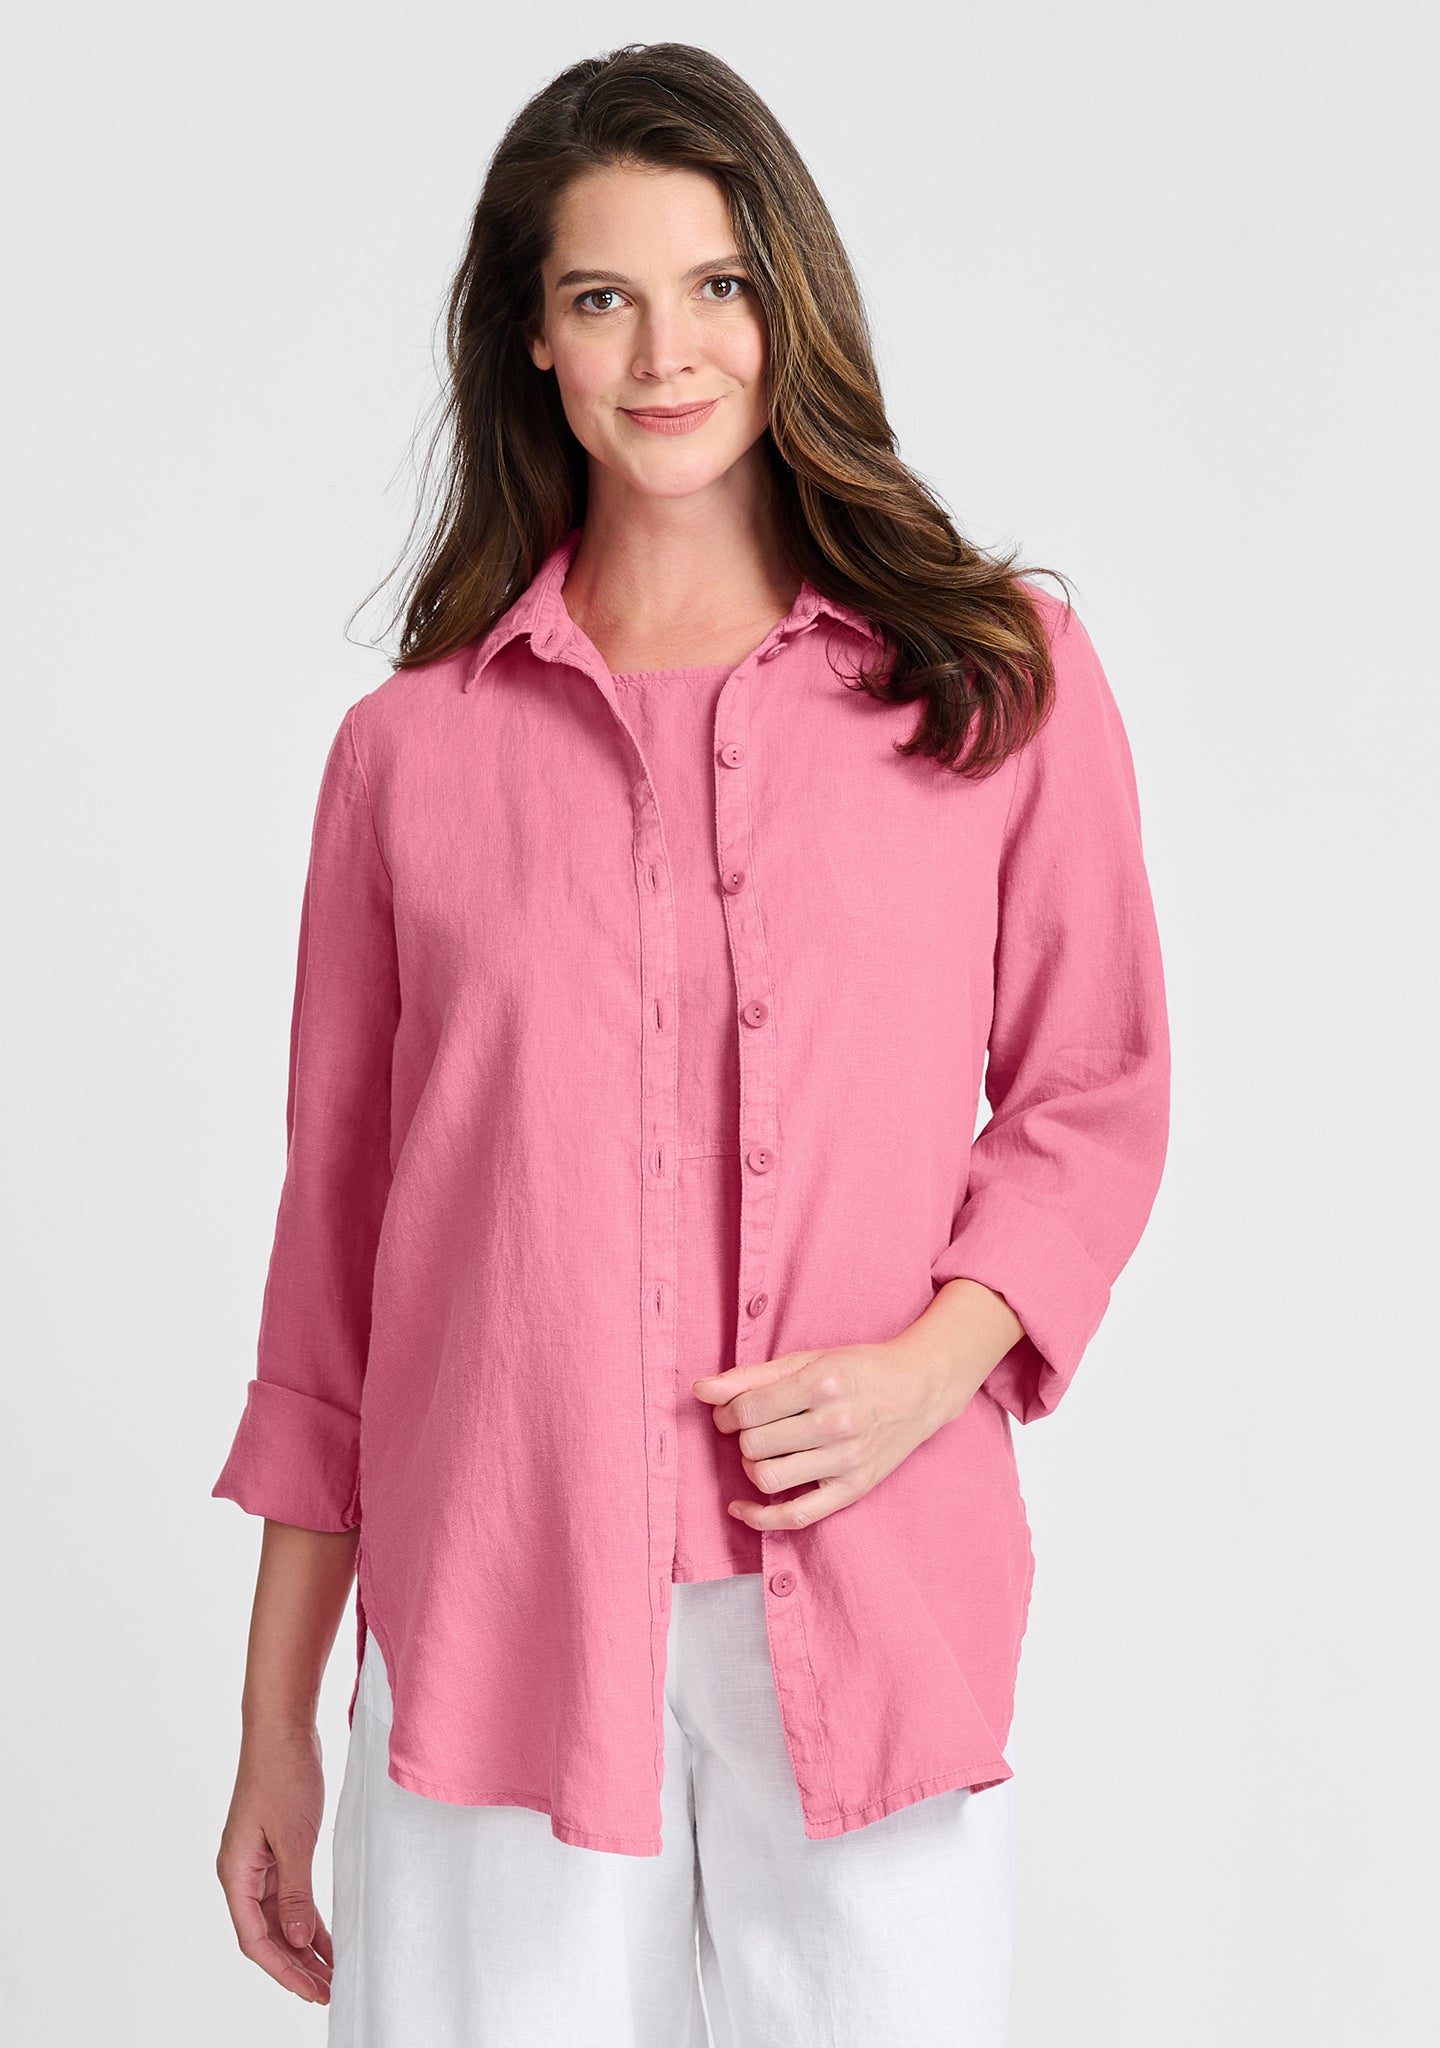 crossroads blouse linen button down shirt pink